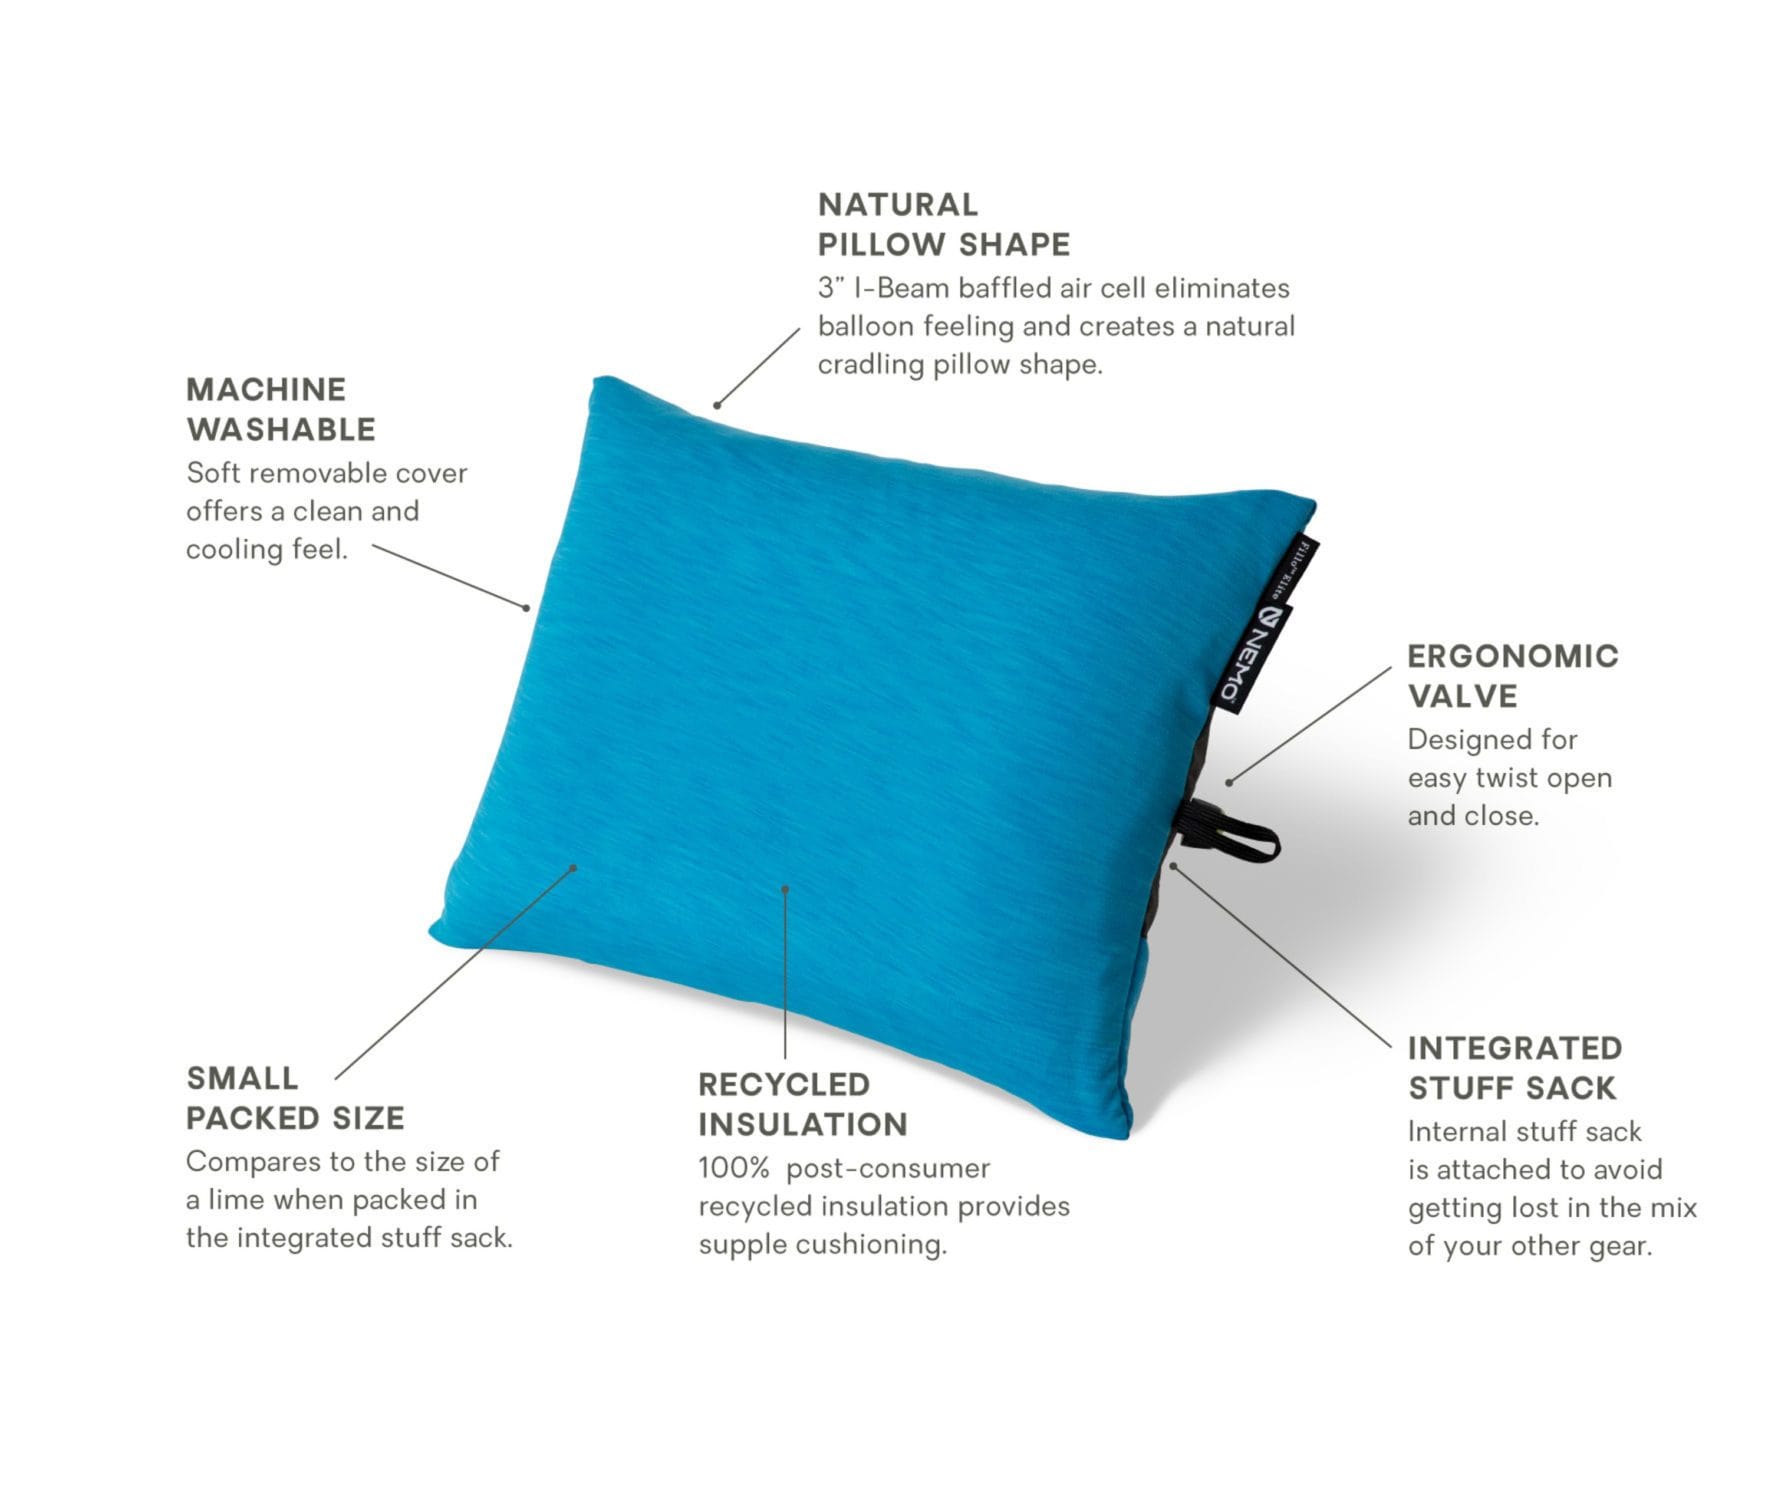 nemo Pillow Fillo Elite Ultralight Backpacking Pillow